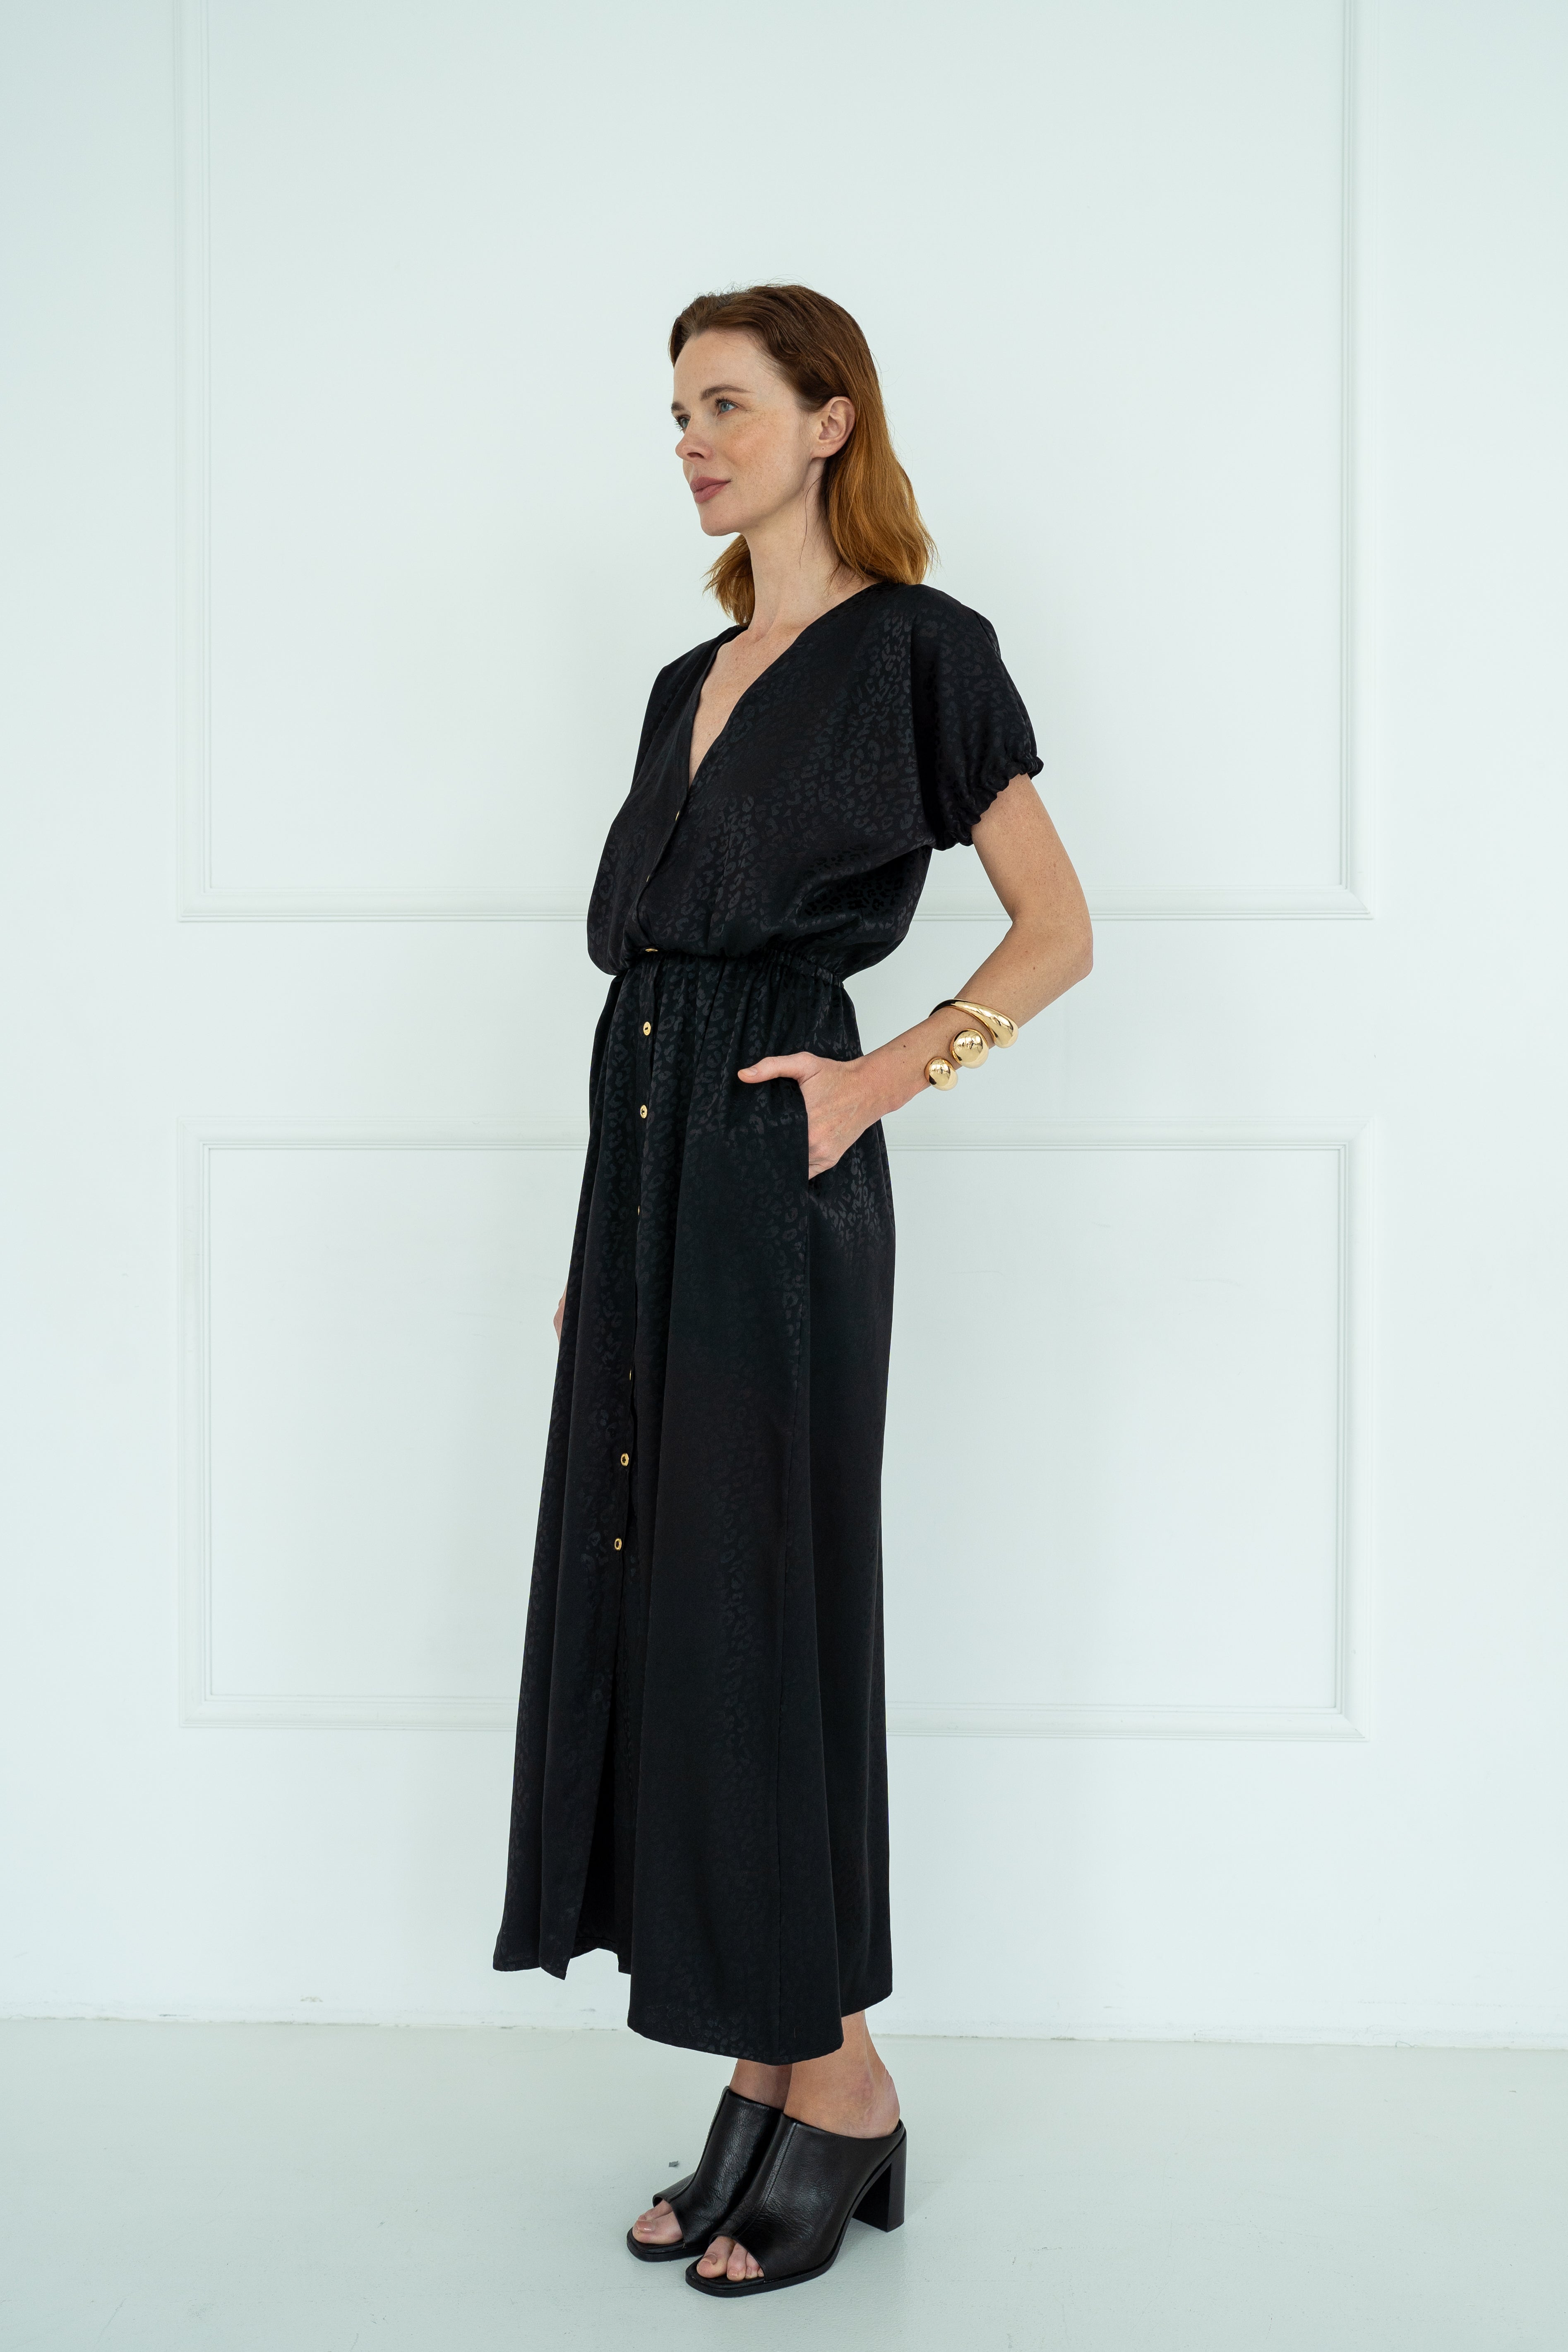 Gabriella Leopard Print Dress